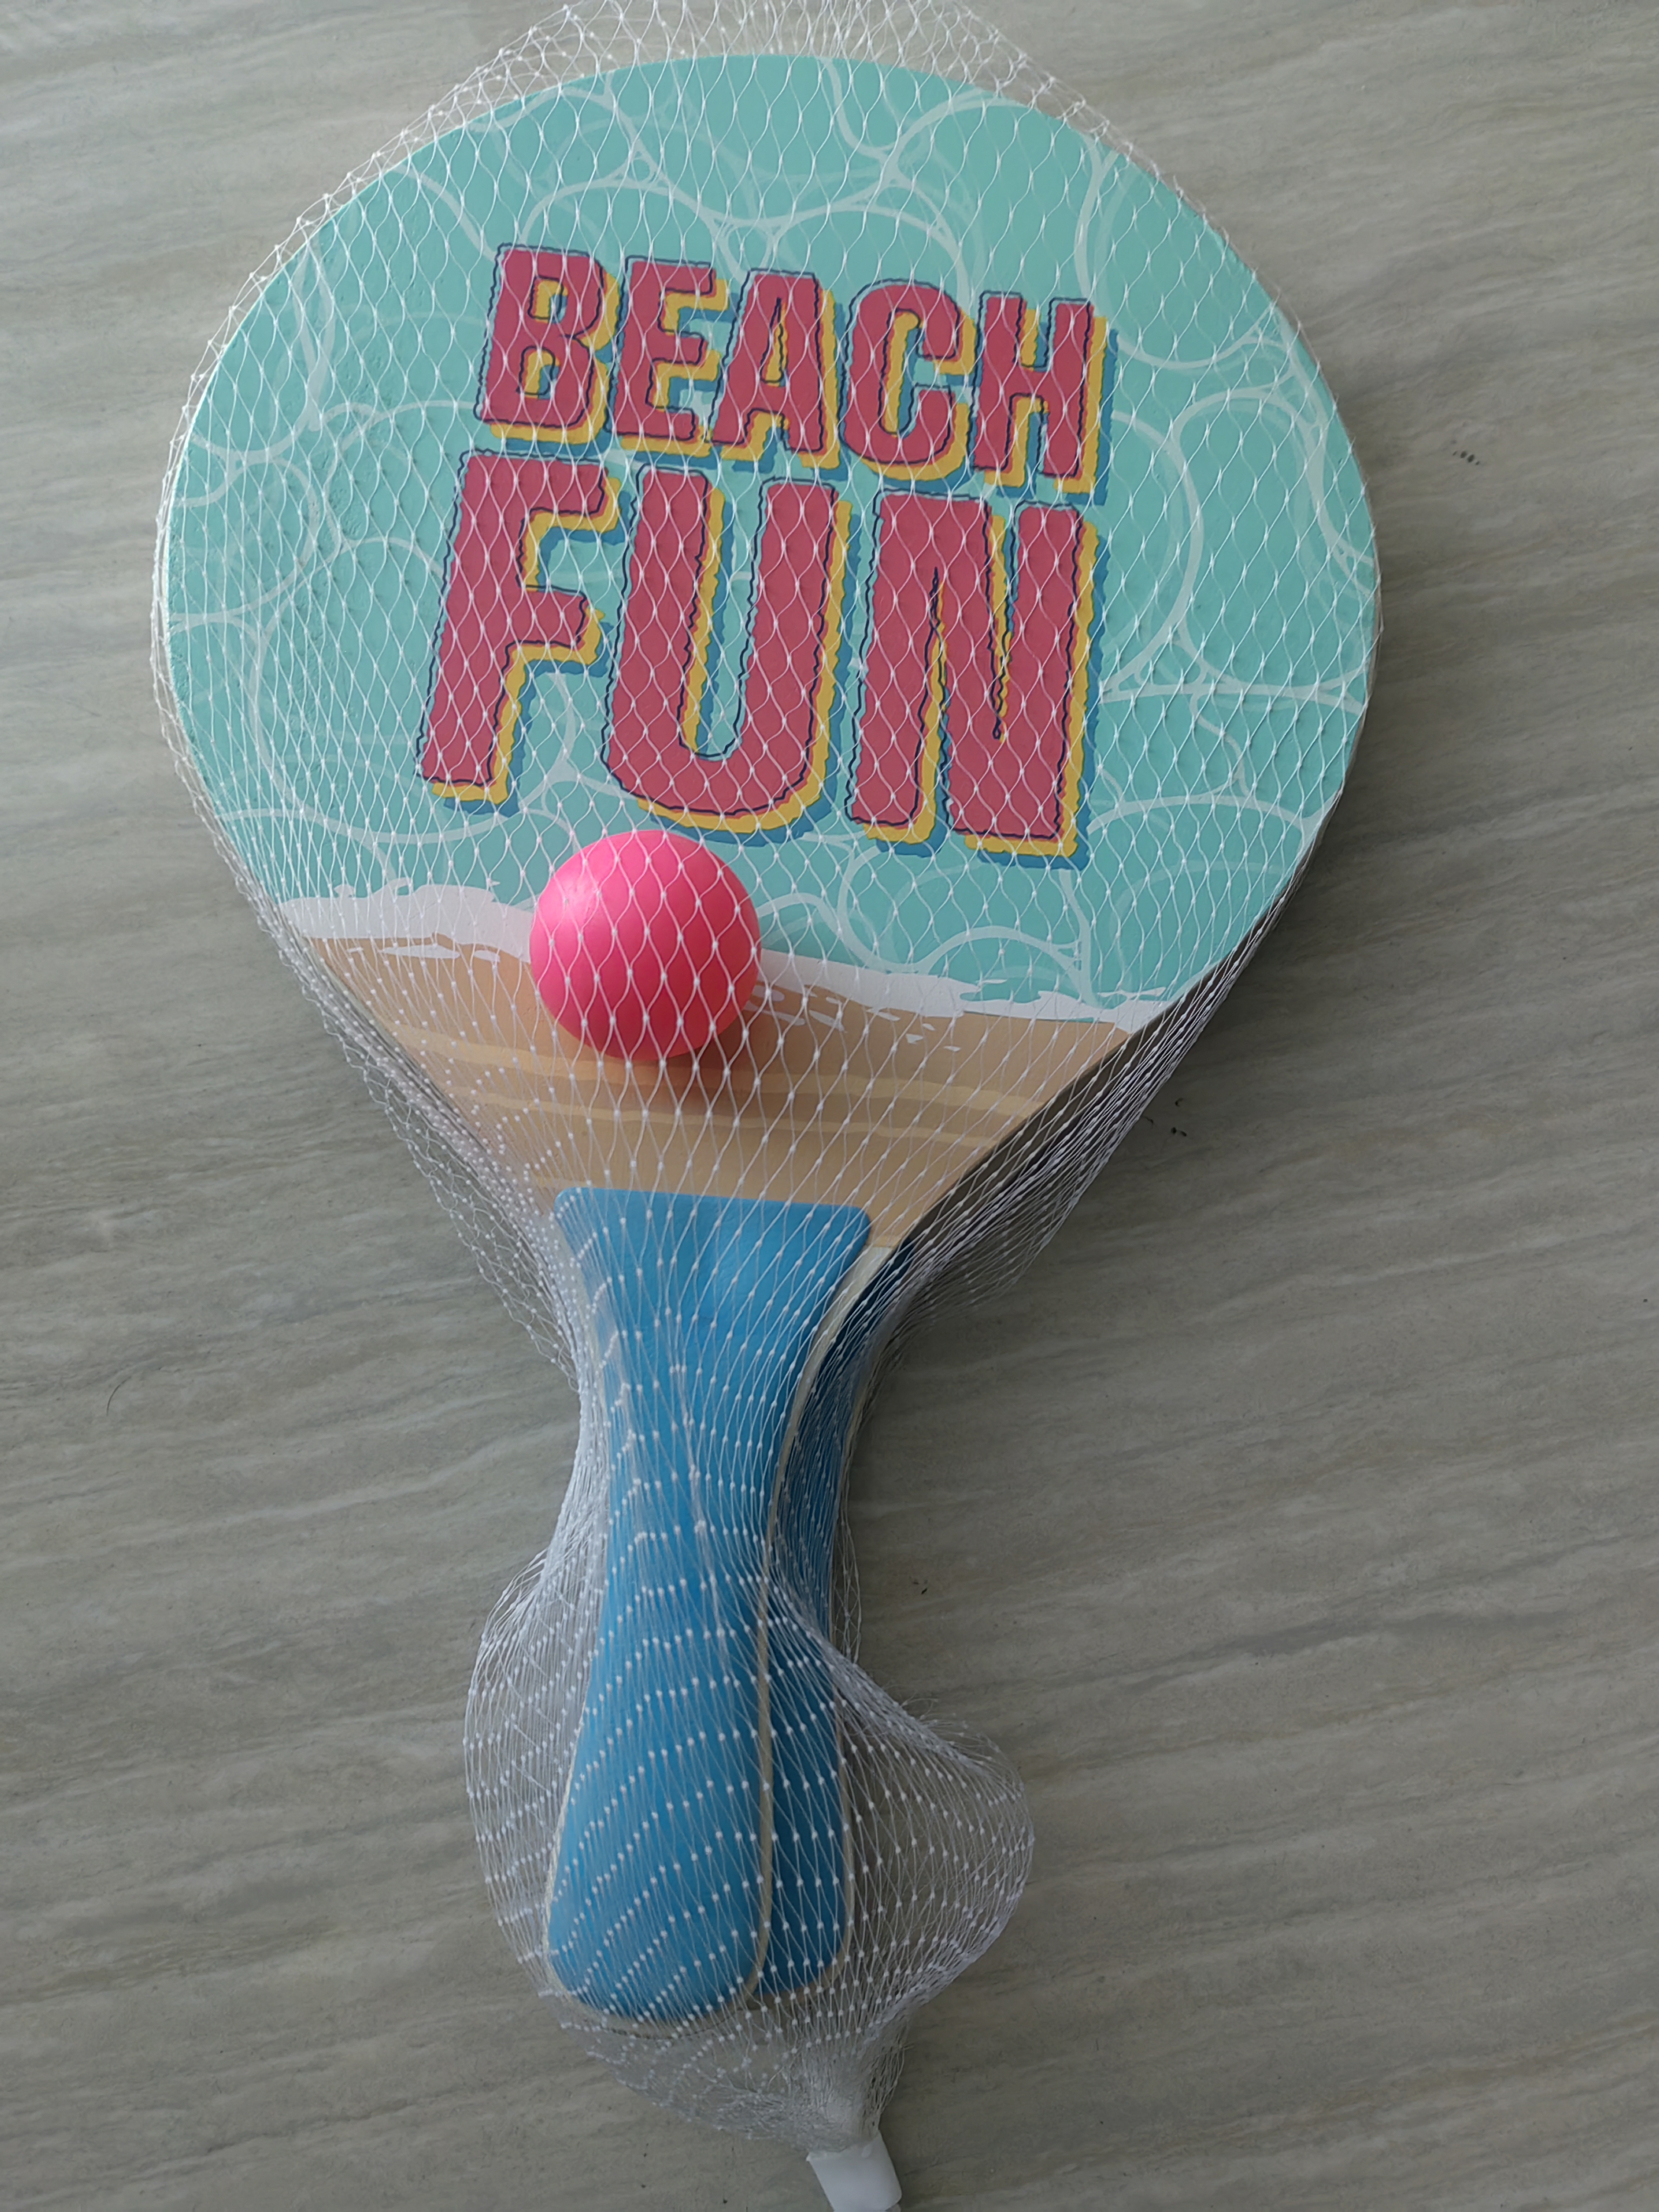 Juego de raqueta de playa con 2 paletas de madera con mango suave, raqueta de tenis para interiores y exteriores para familia, niños y adultos